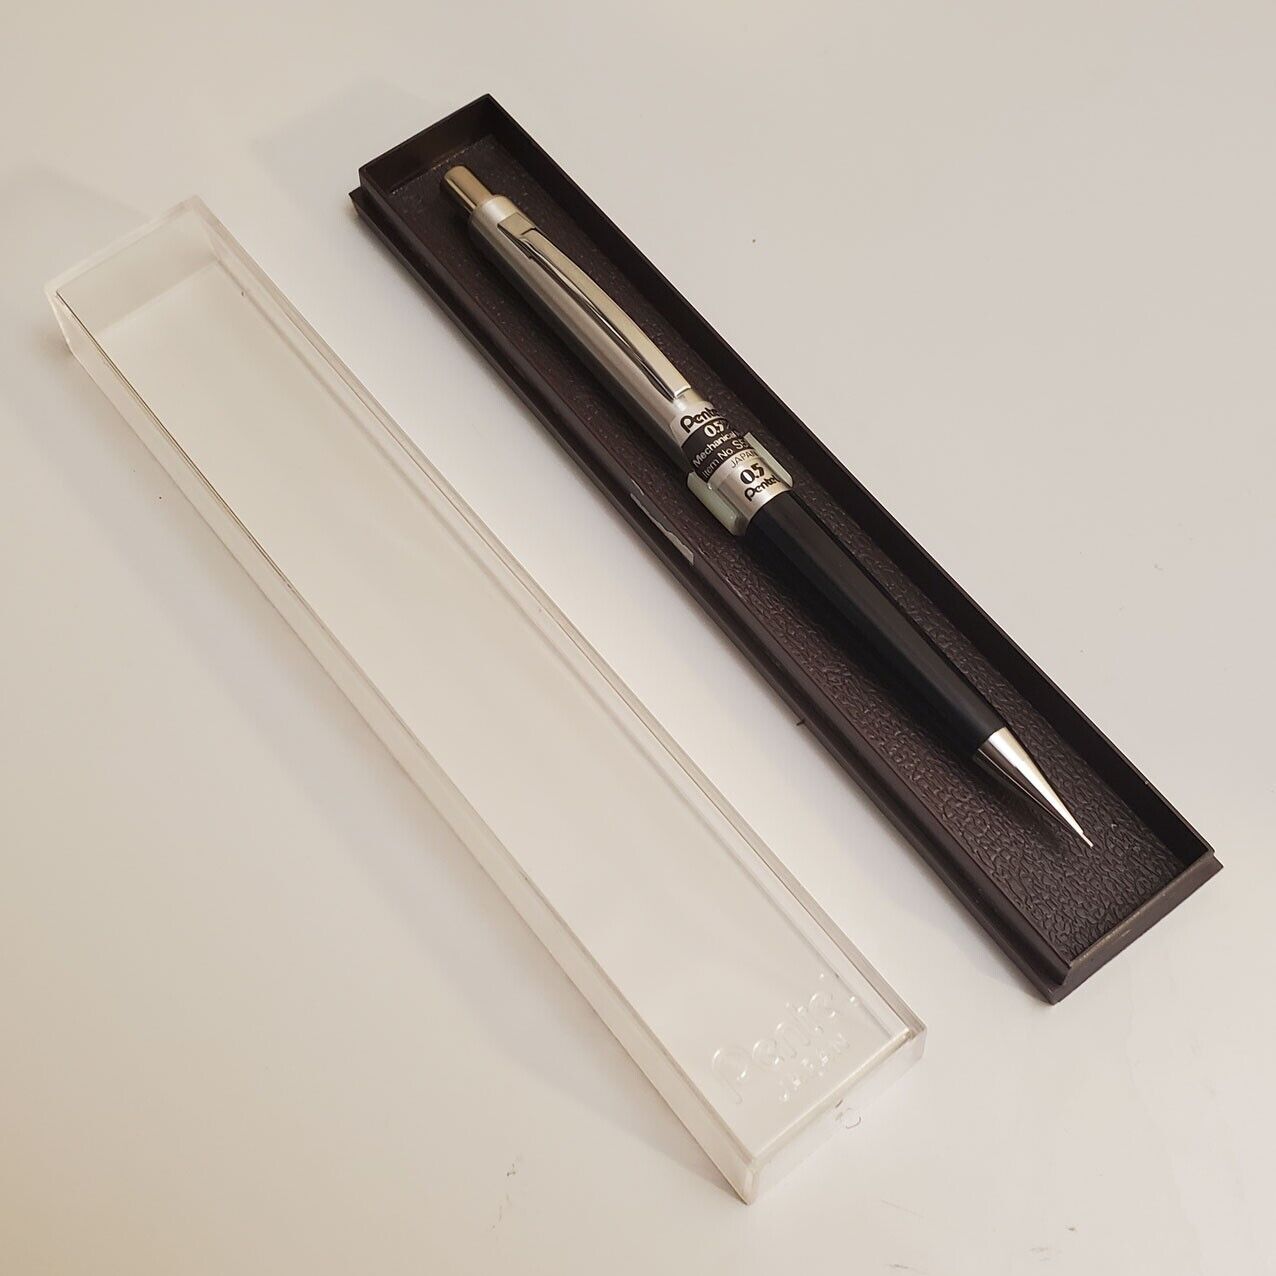 Vintage Mechanical Pencil PENTEL S55 0.5 m/m mm Japan w/retail presentation case